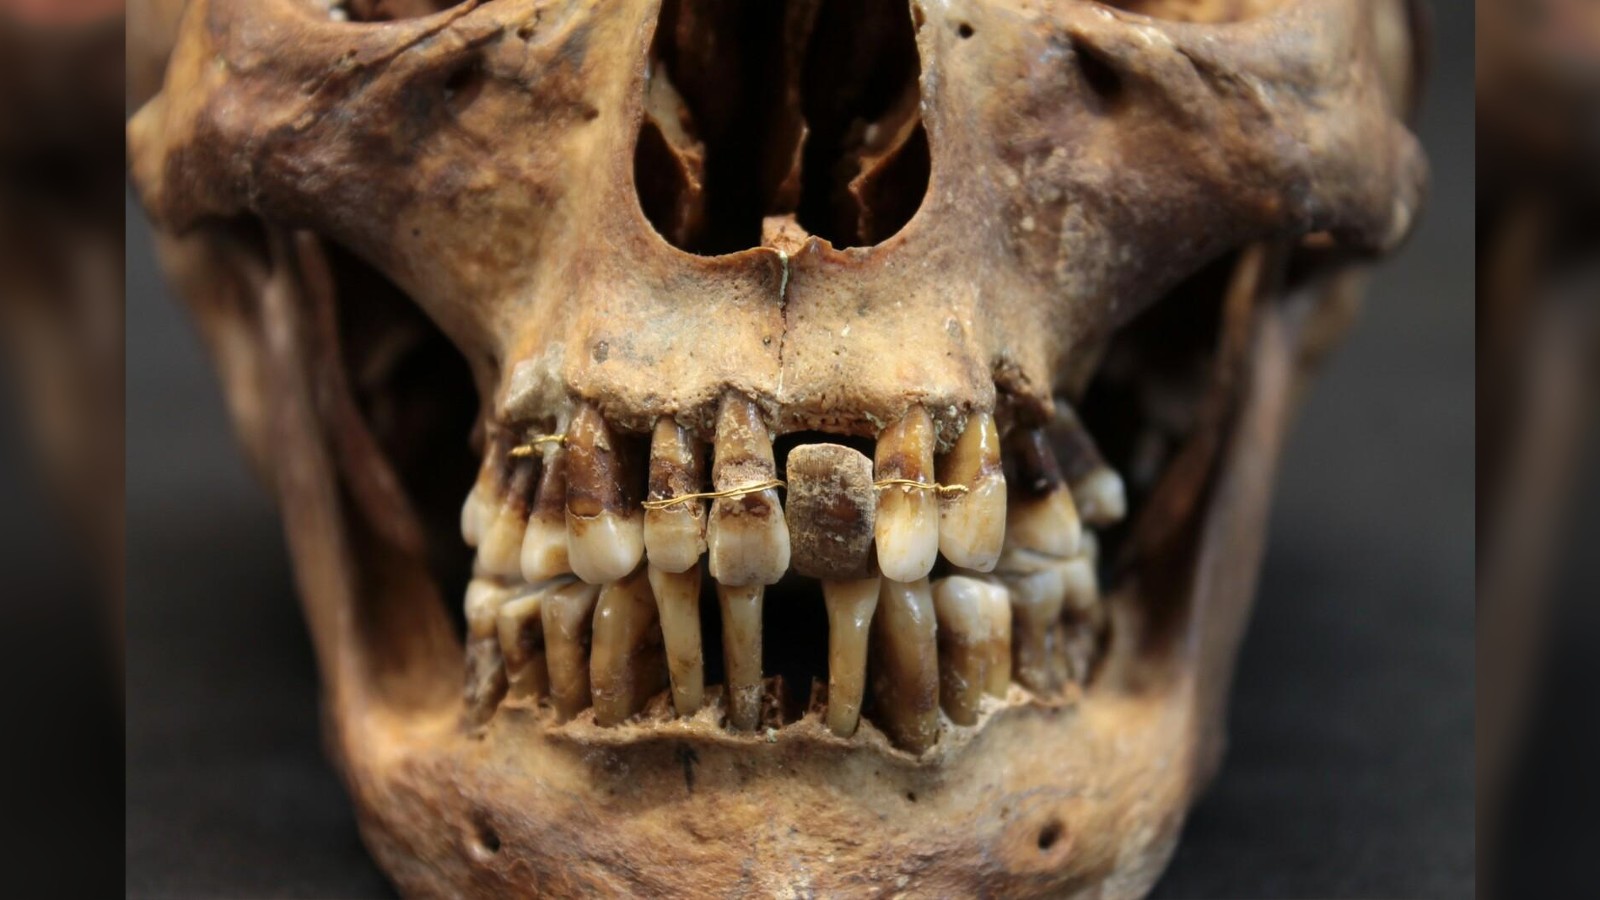 Certains des fils d'or fin étaient enroulés plusieurs fois autour des dents de D'Alègre pour les maintenir en place, tandis que certaines de ses dents avaient été percées pour laisser passer les fils.